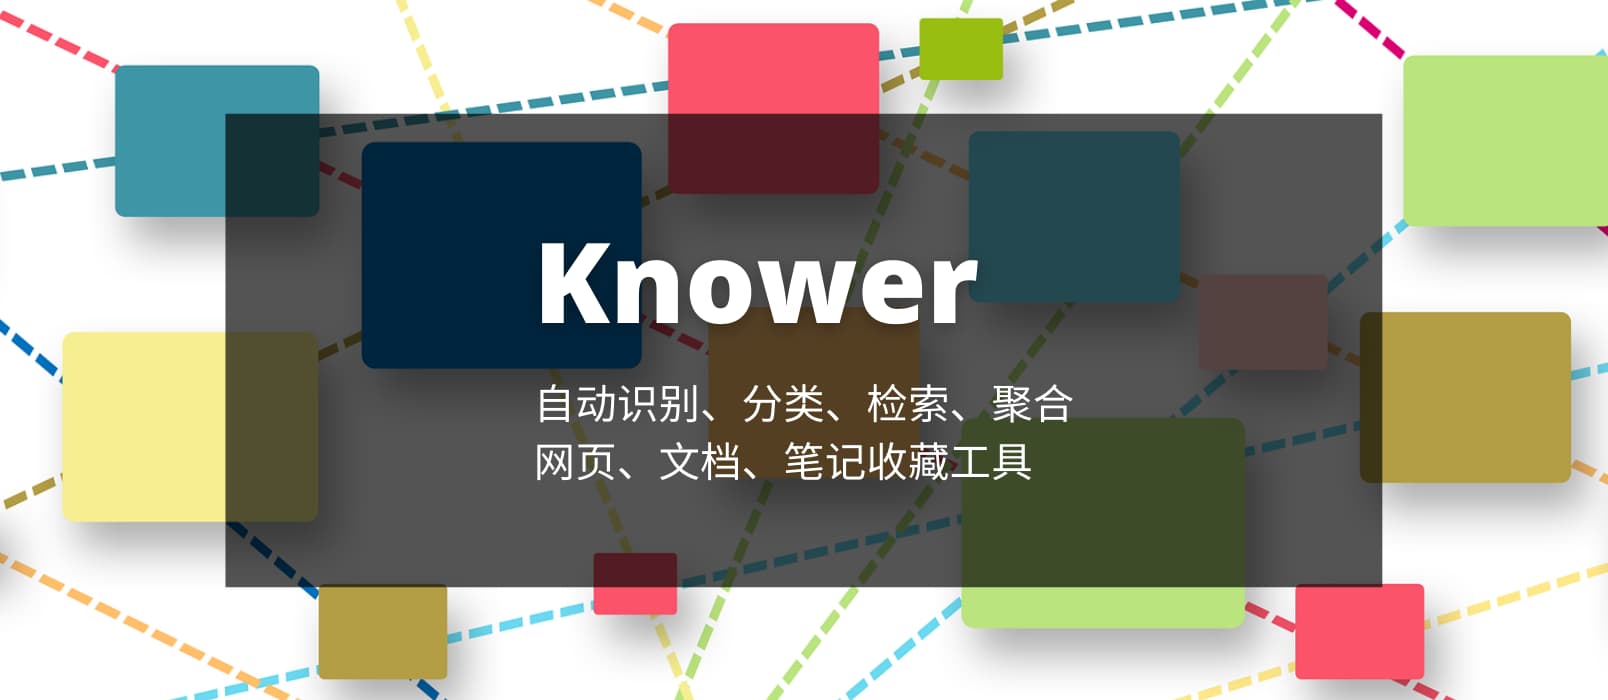 Knower - 能自动识别、分类、检索、聚合的网页/文档收藏工具